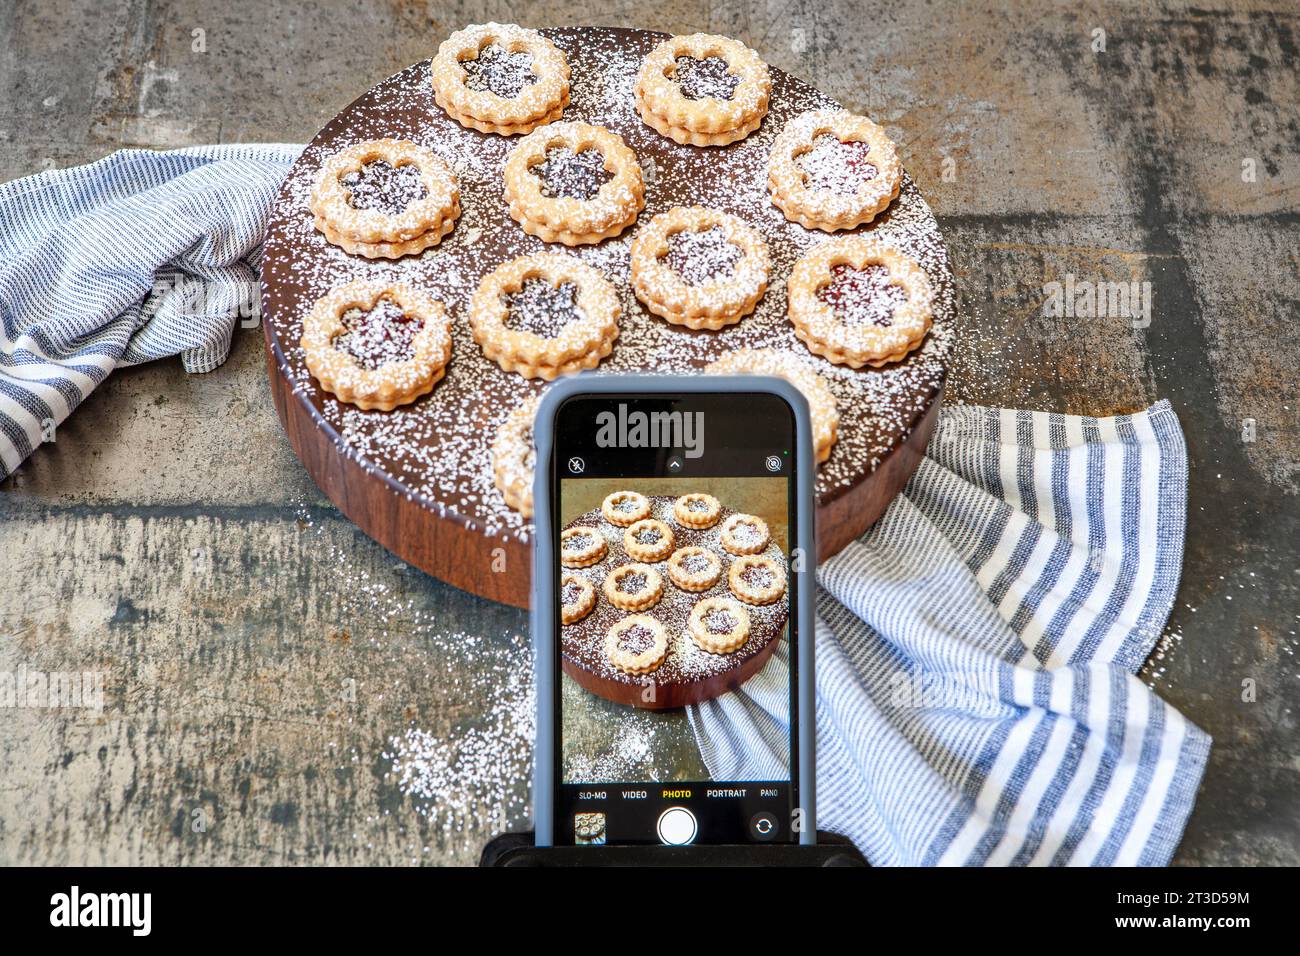 Hochwinkelansicht des iPhone, bei dem Linzer Torten mit Puderzucker auf rundem Holzbrett mit blauem Handtuch fotografiert werden Stockfoto